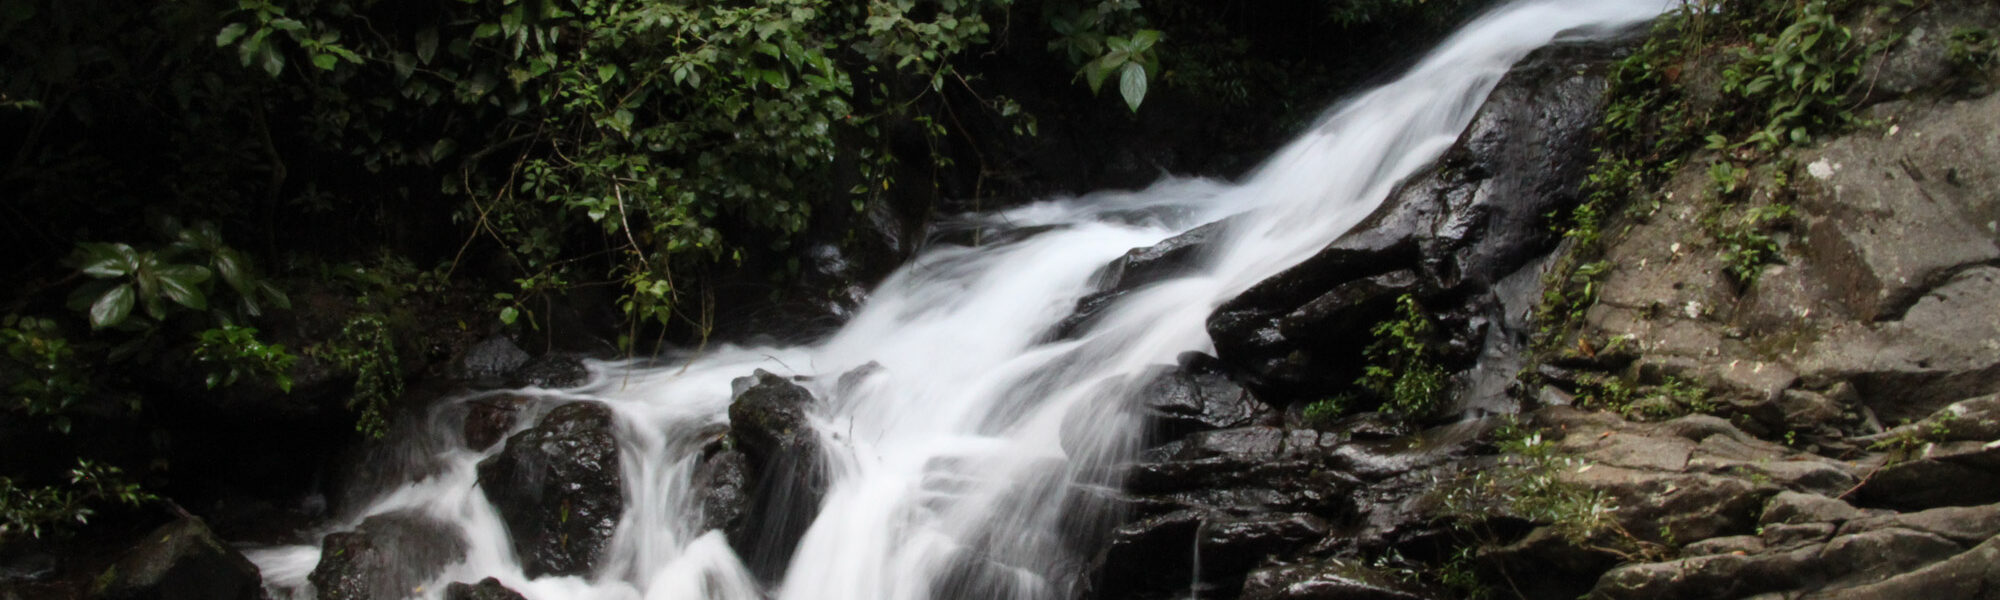 Parque Nacional Rincón de la Vieja - Costa Rica